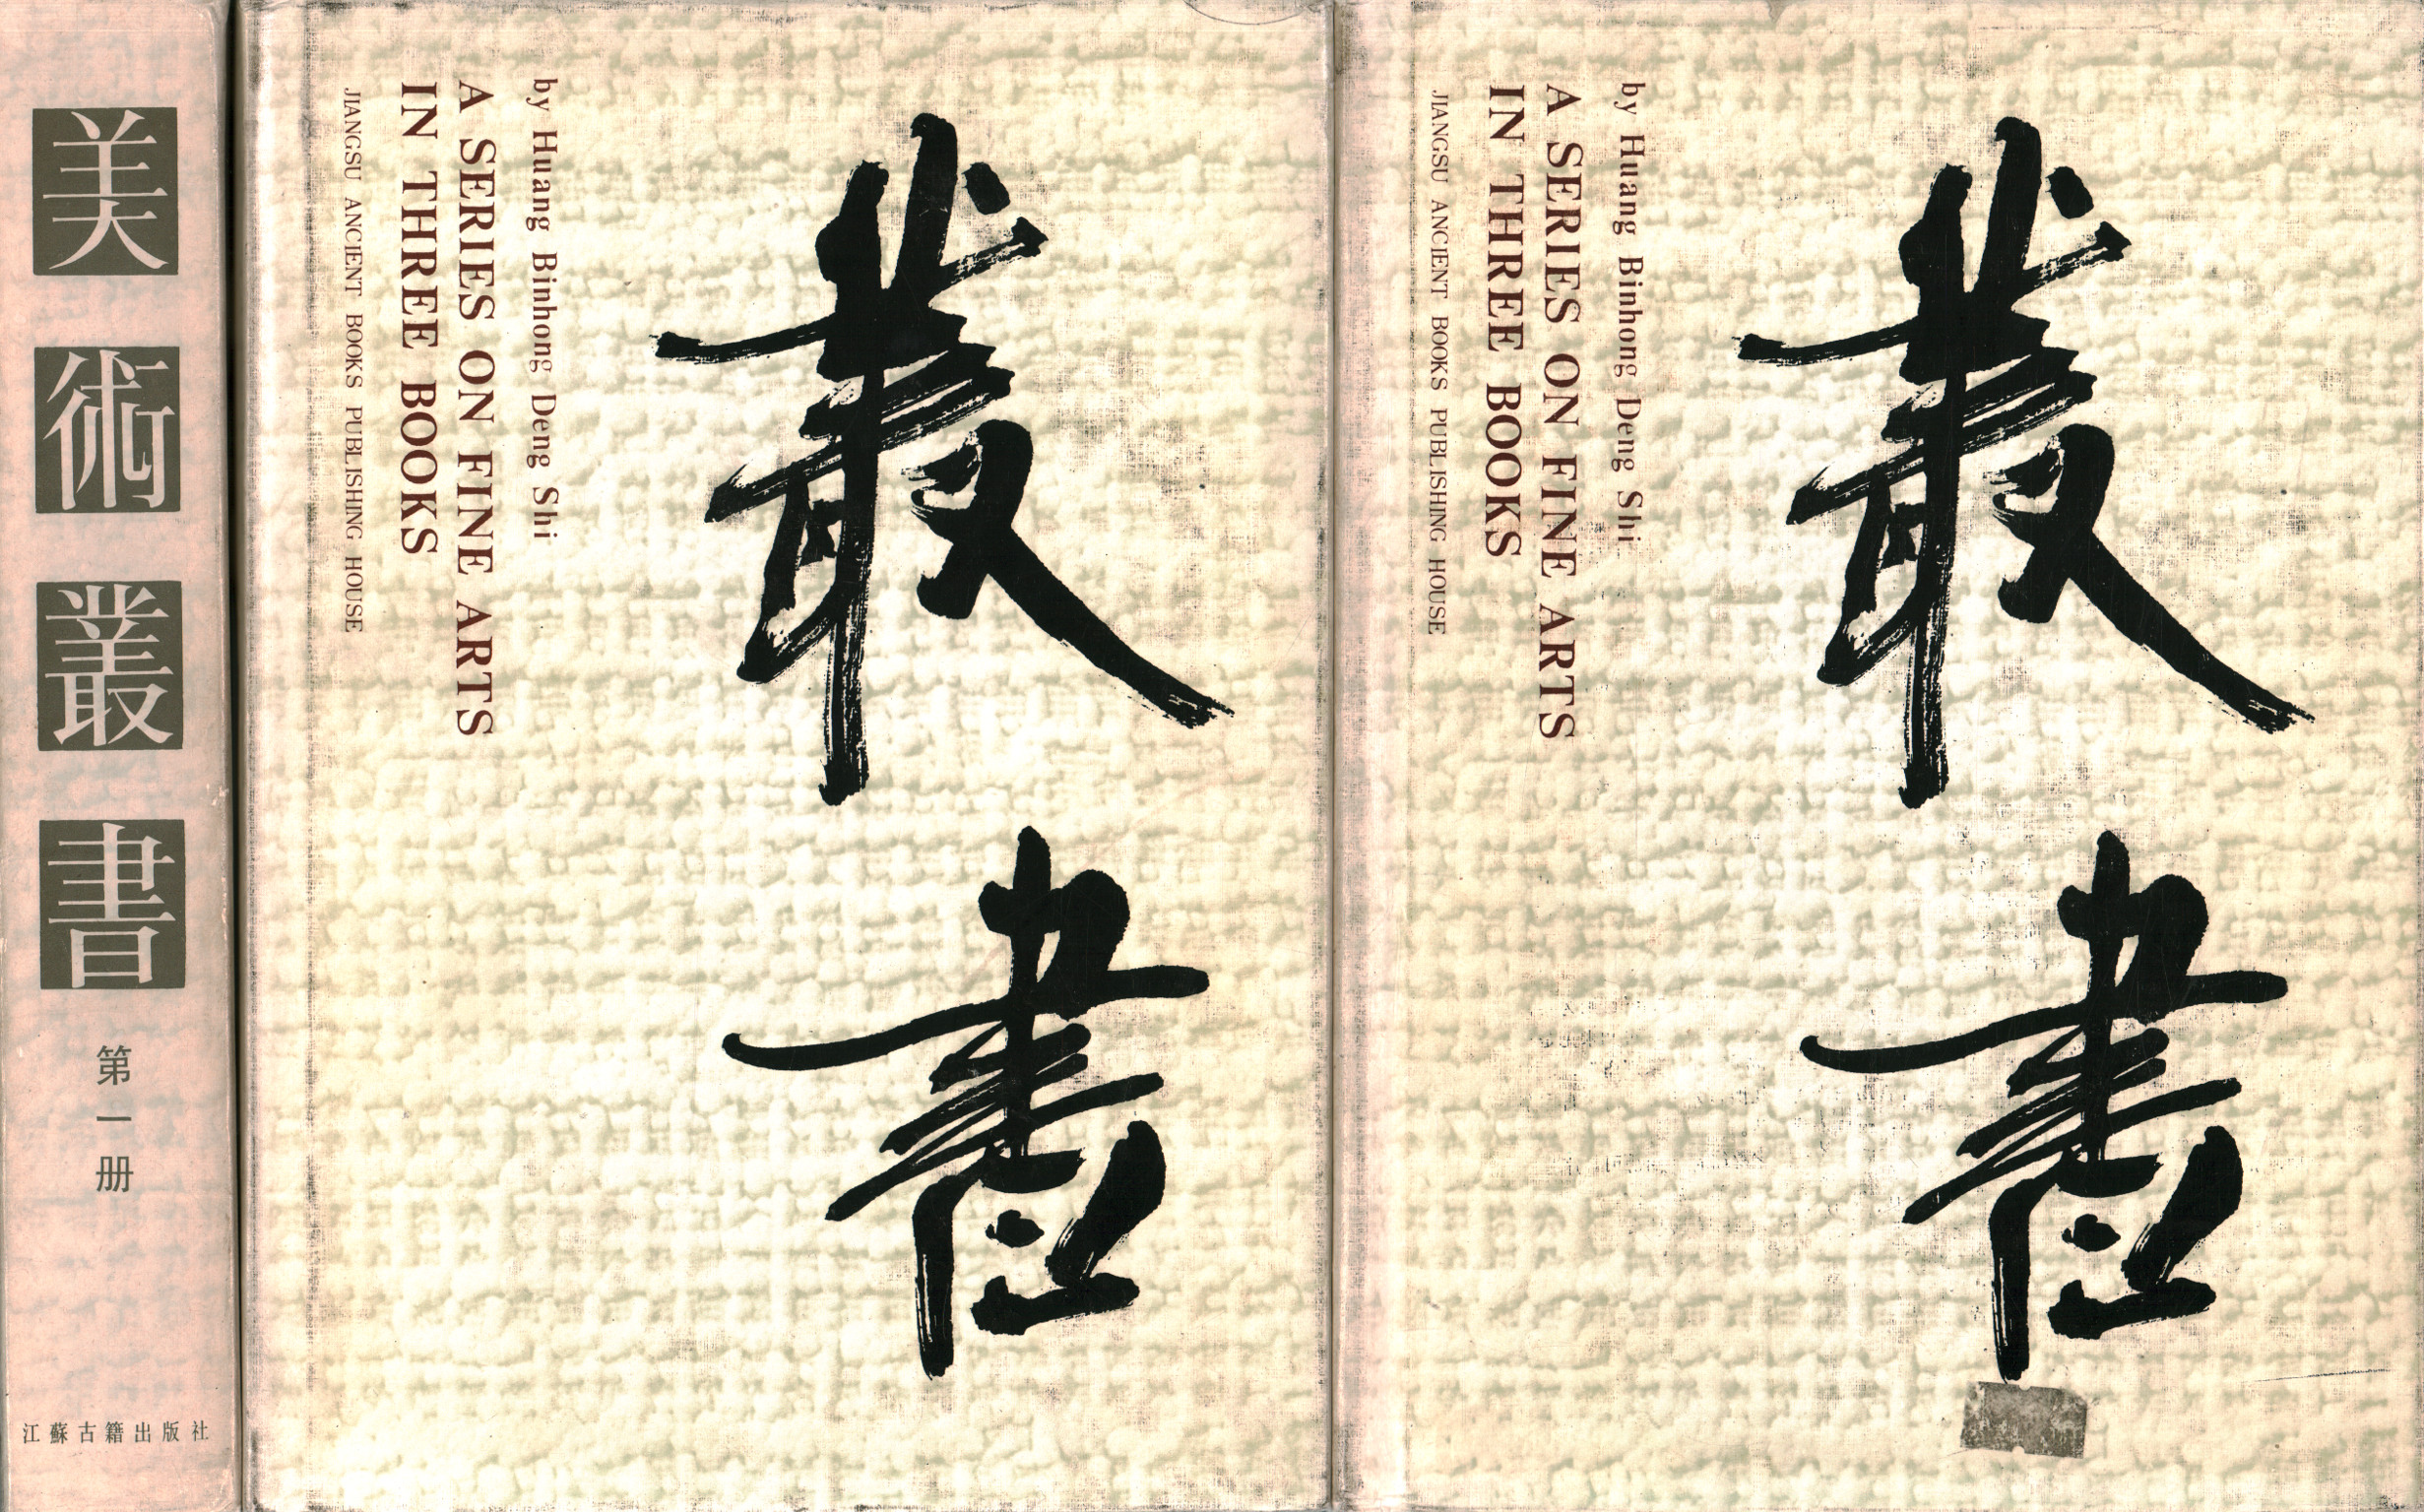 Une série sur les beaux-arts en trois livres (3 volumes), Huang Binhong Deng Shi